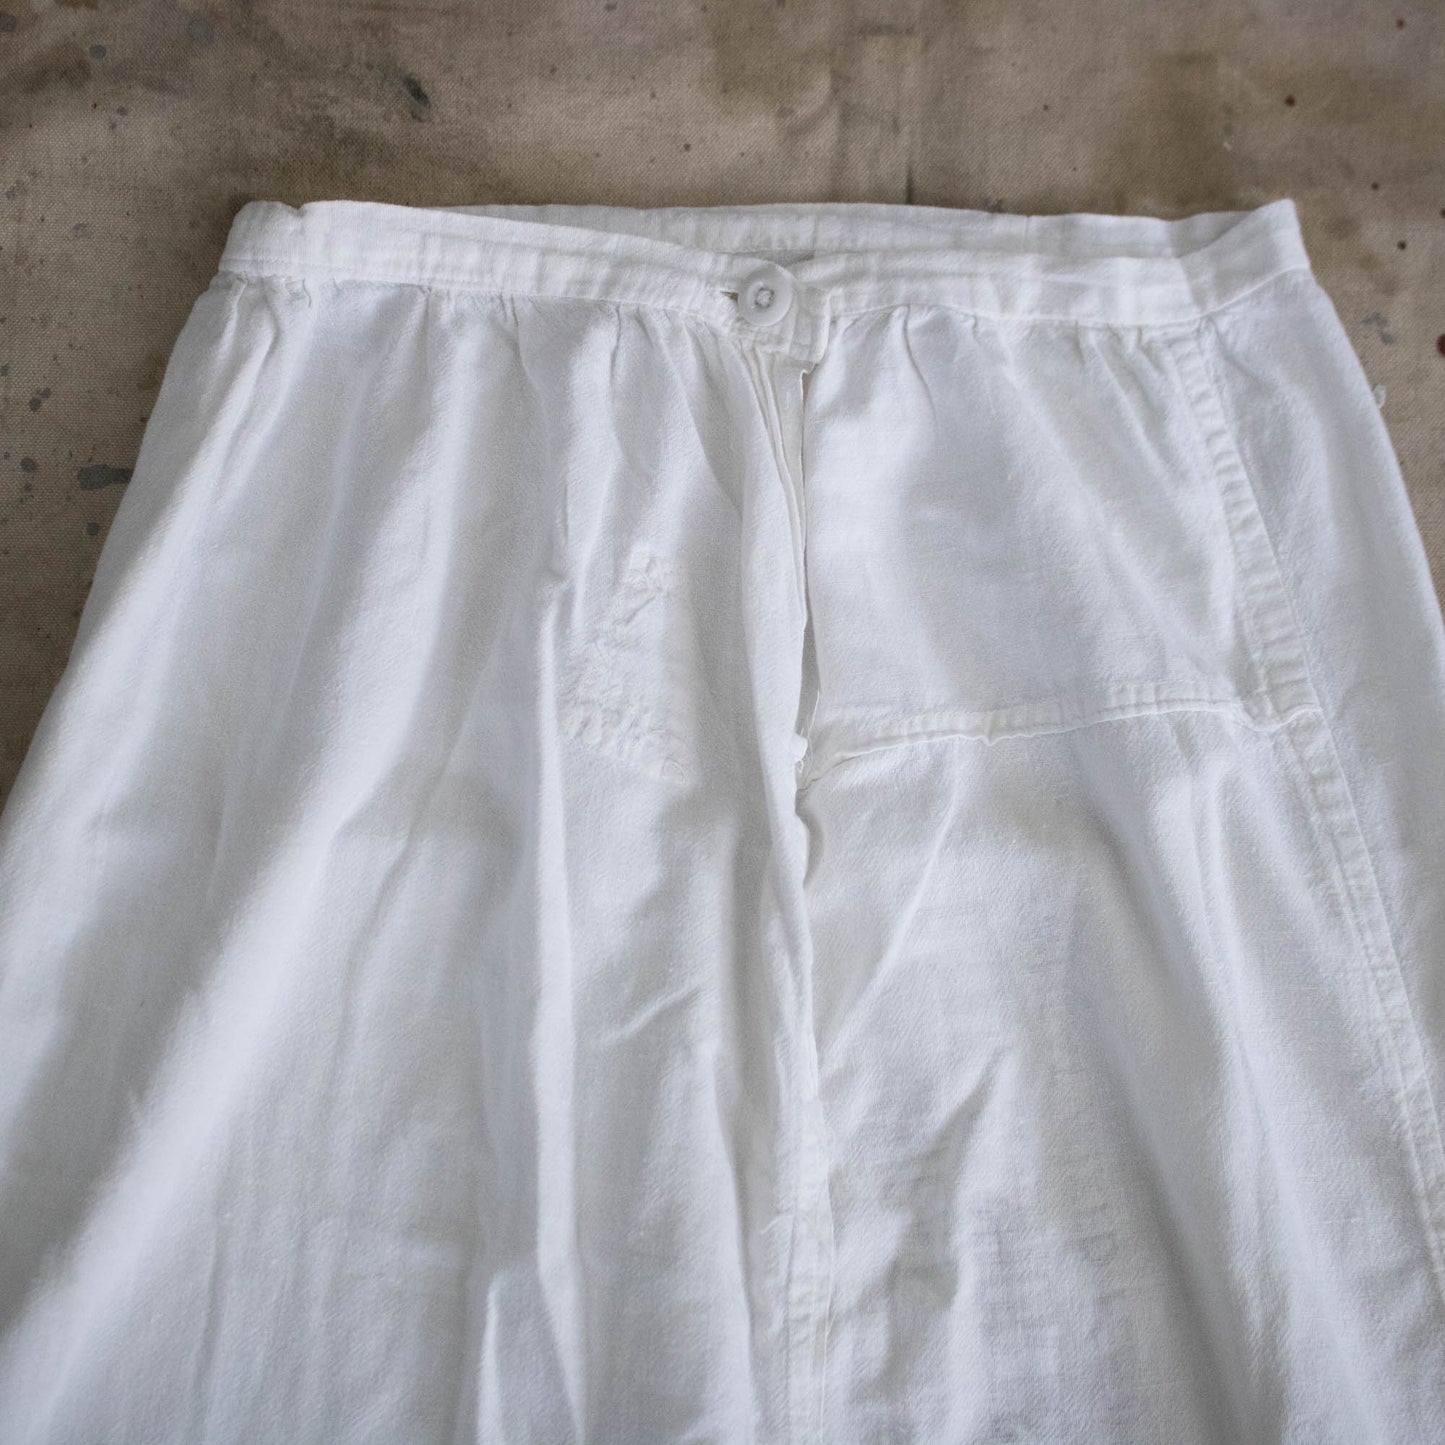 Original 30s/40s Feedsack Skirt